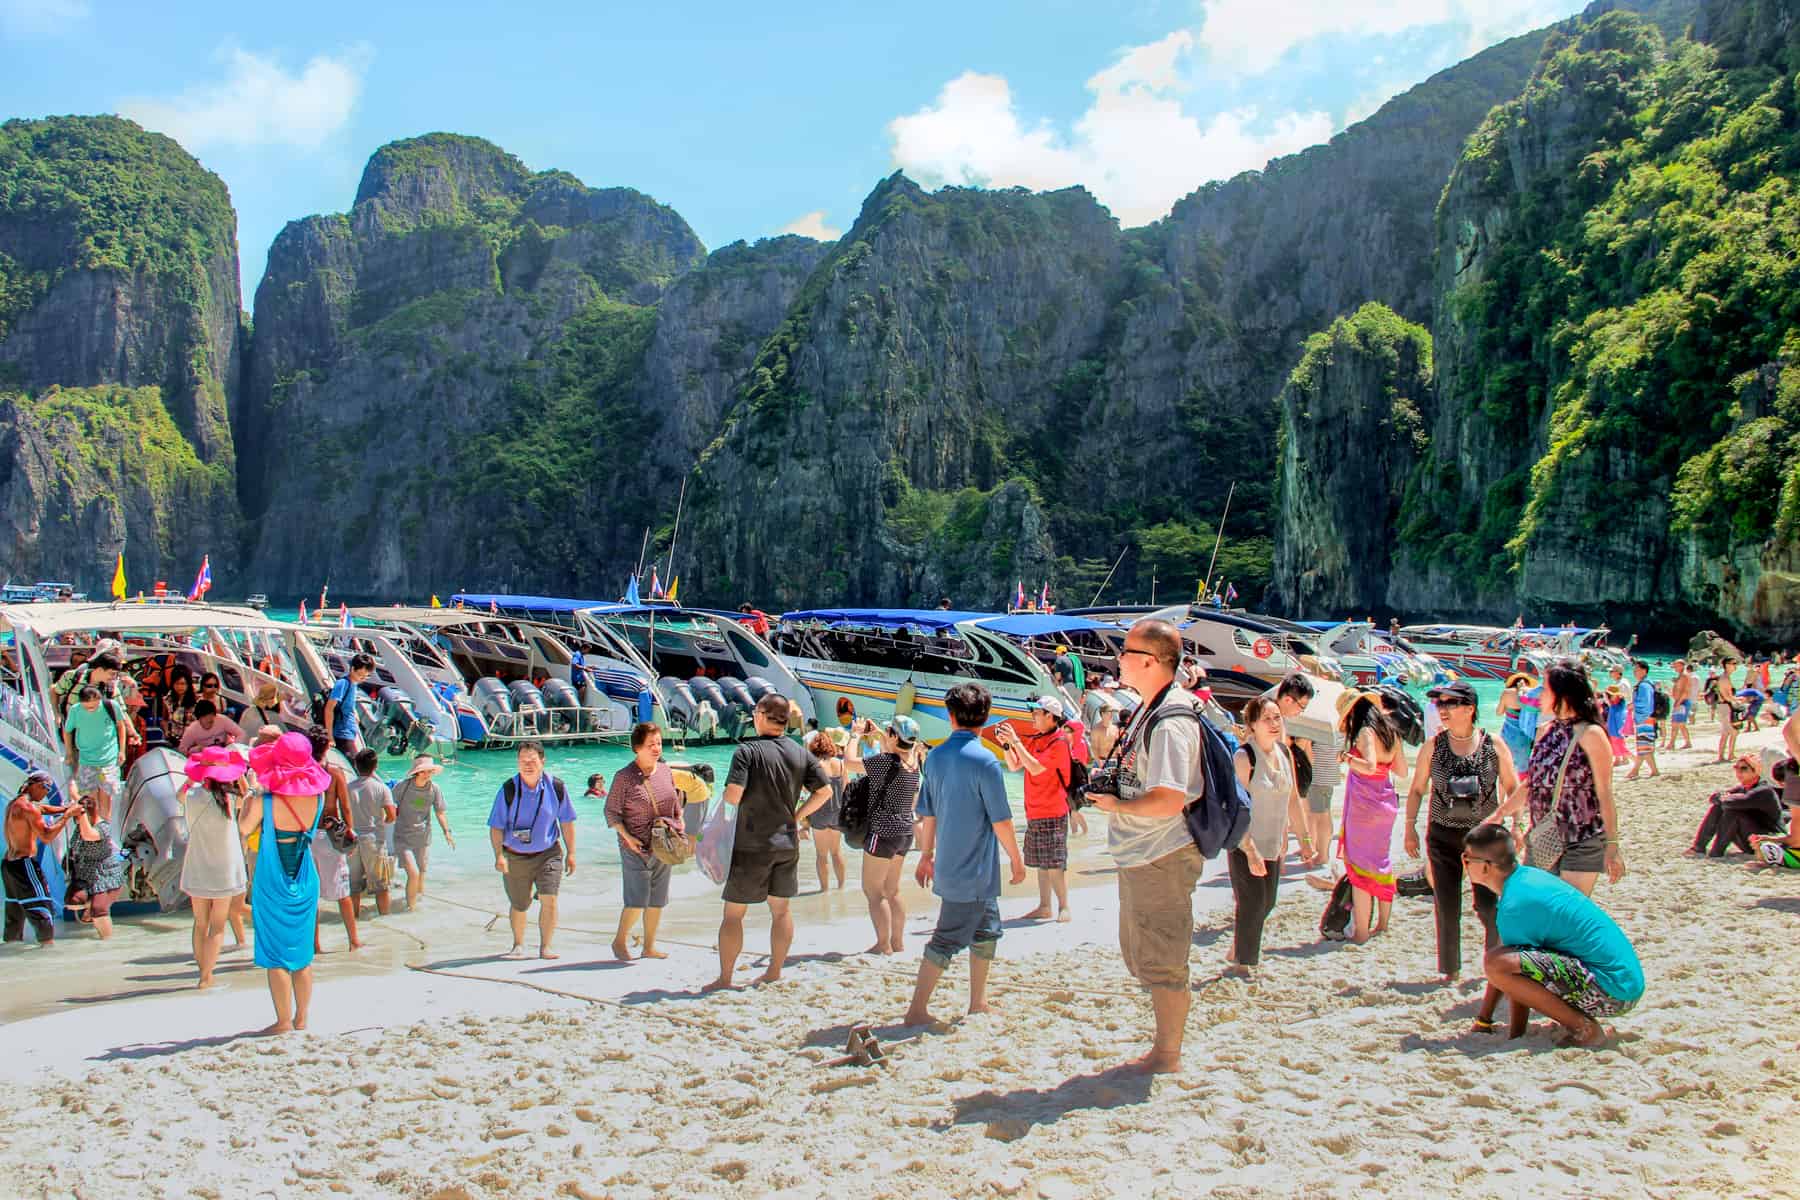 Visiting The Beach in Thailand – Maya Bay Reopens Responsibly